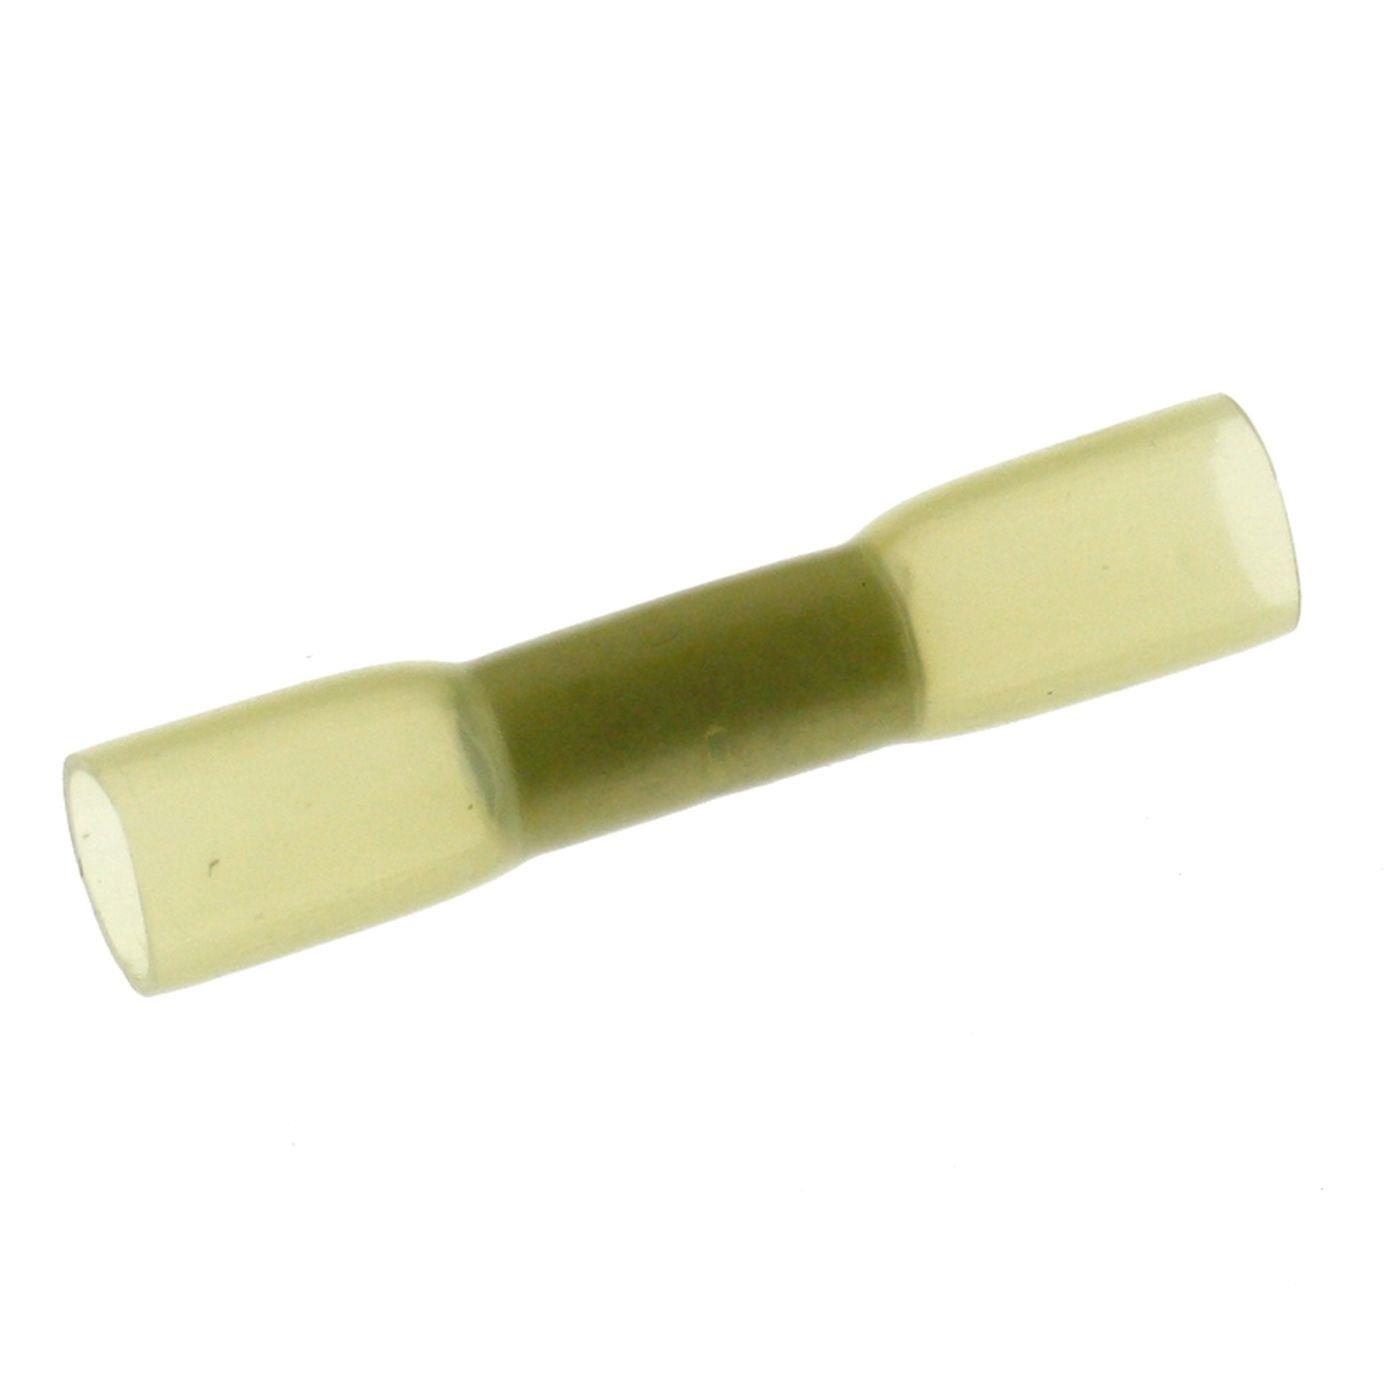 25x Schrumpf Stoßverbinder mit Schrumpfschlauch vollisoliert 4-6mm² Gelb Quetschverbinder Messing verzinnt